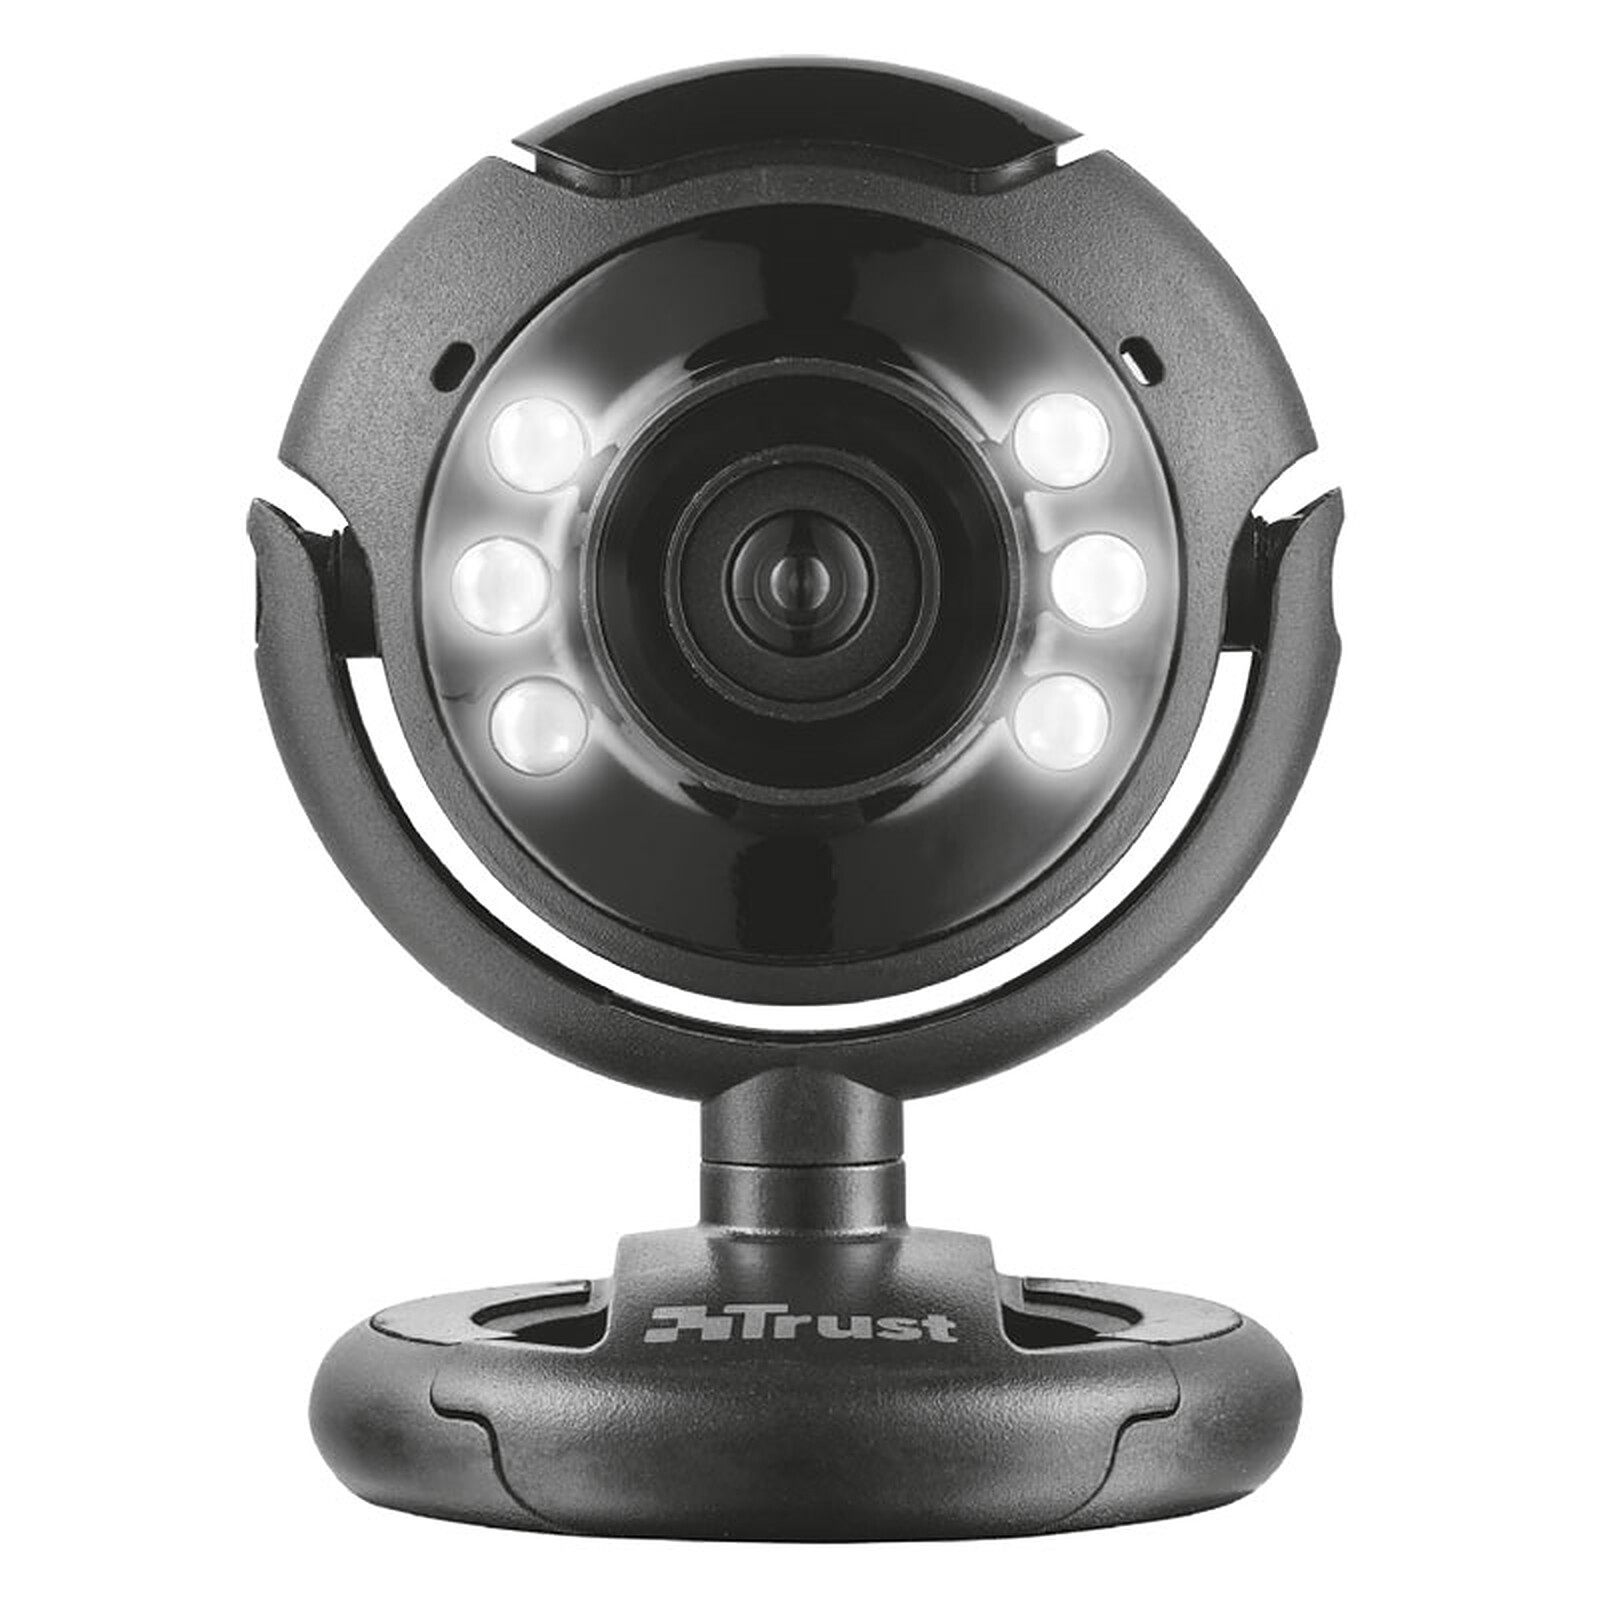 Trust Exis Webcam avec Microphone Intégré USB 2.0 - Noir/Argent